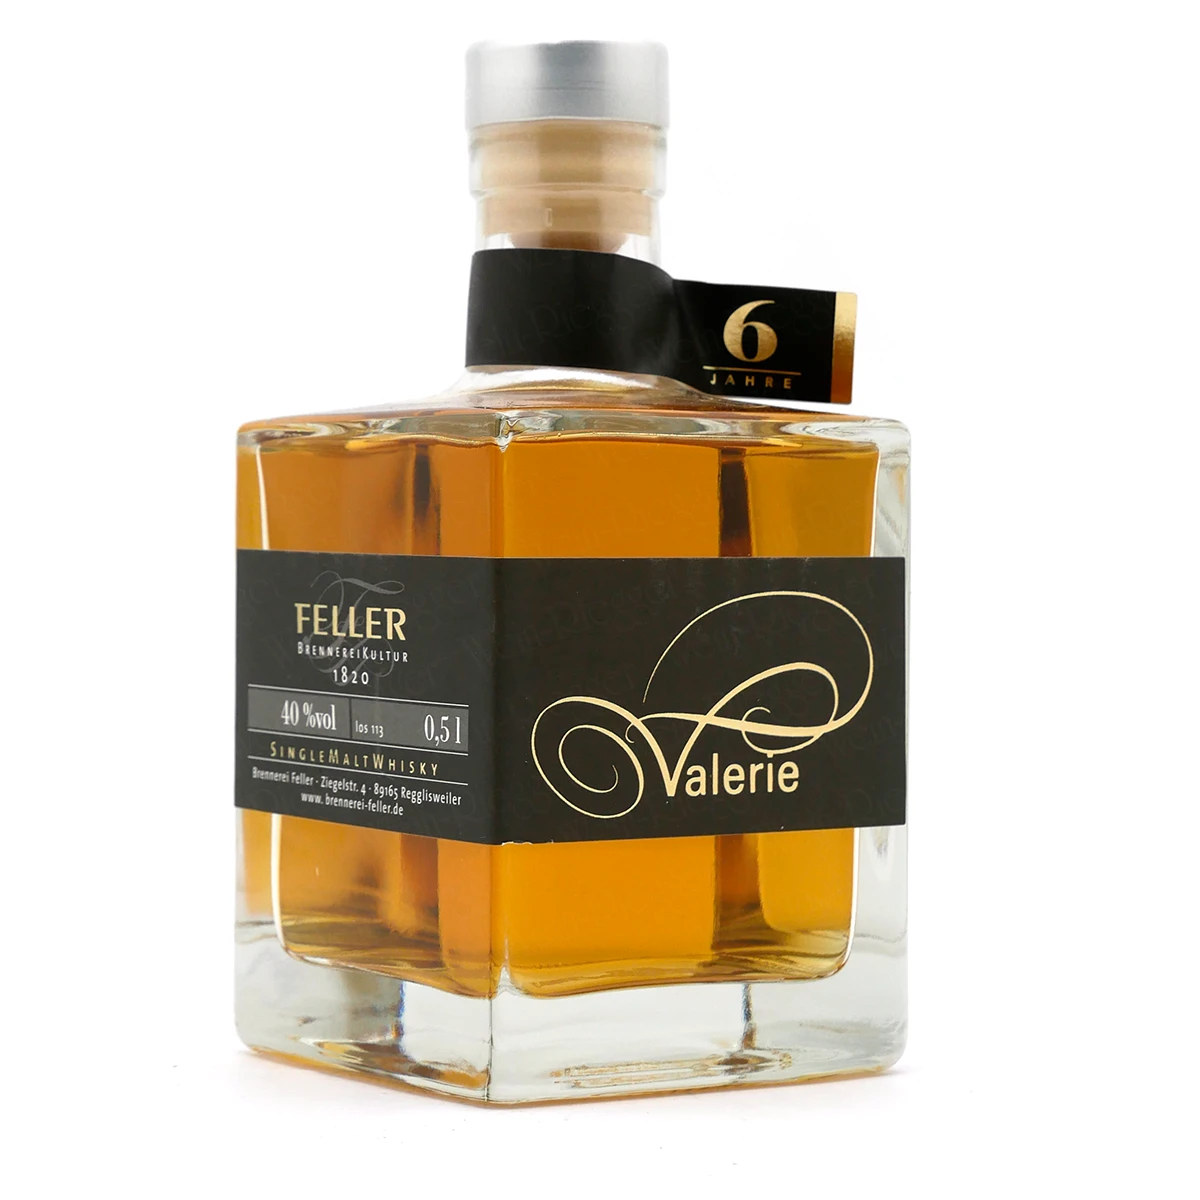 Valerie 6 Jahre Single Malt Whisky | Feller